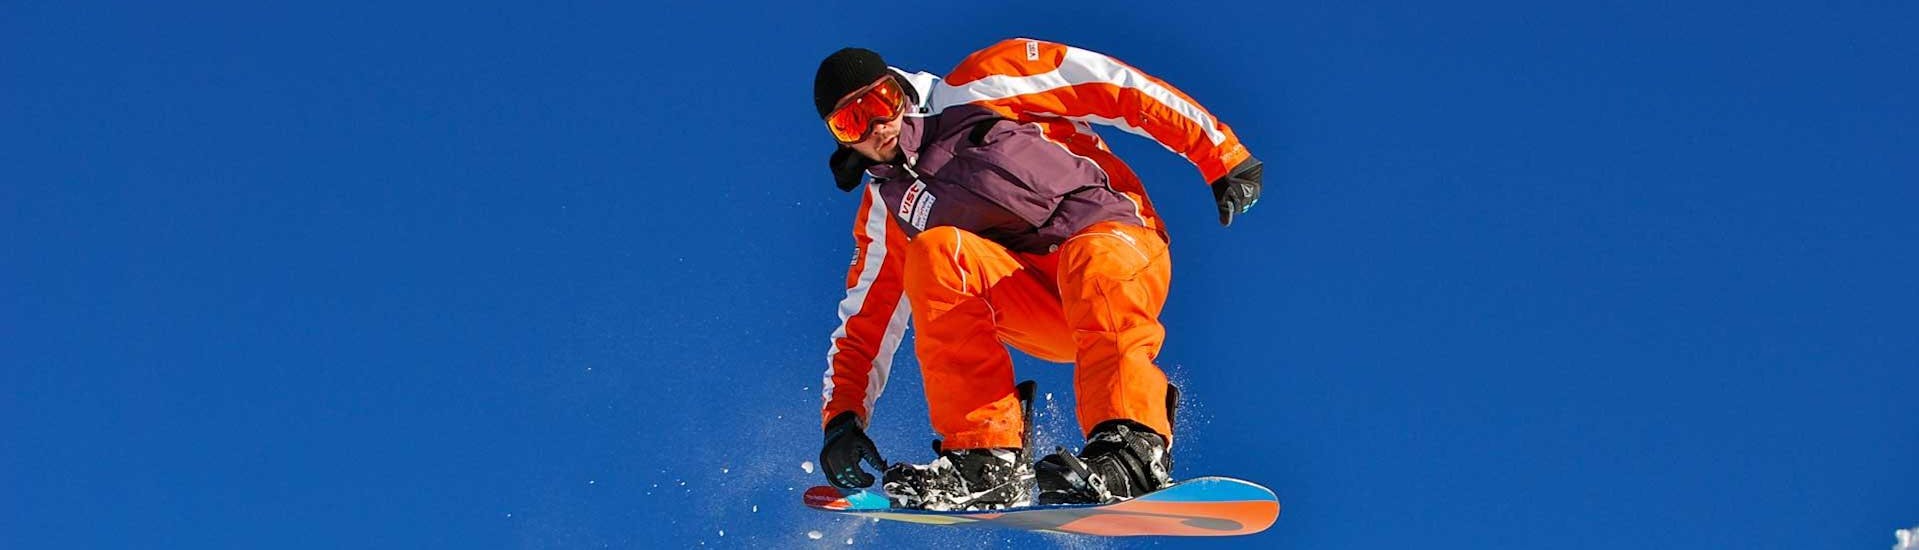 Cours de snowboard pour Tous niveaux avec Skischule Toni Gruber Alpendorf - Hero image